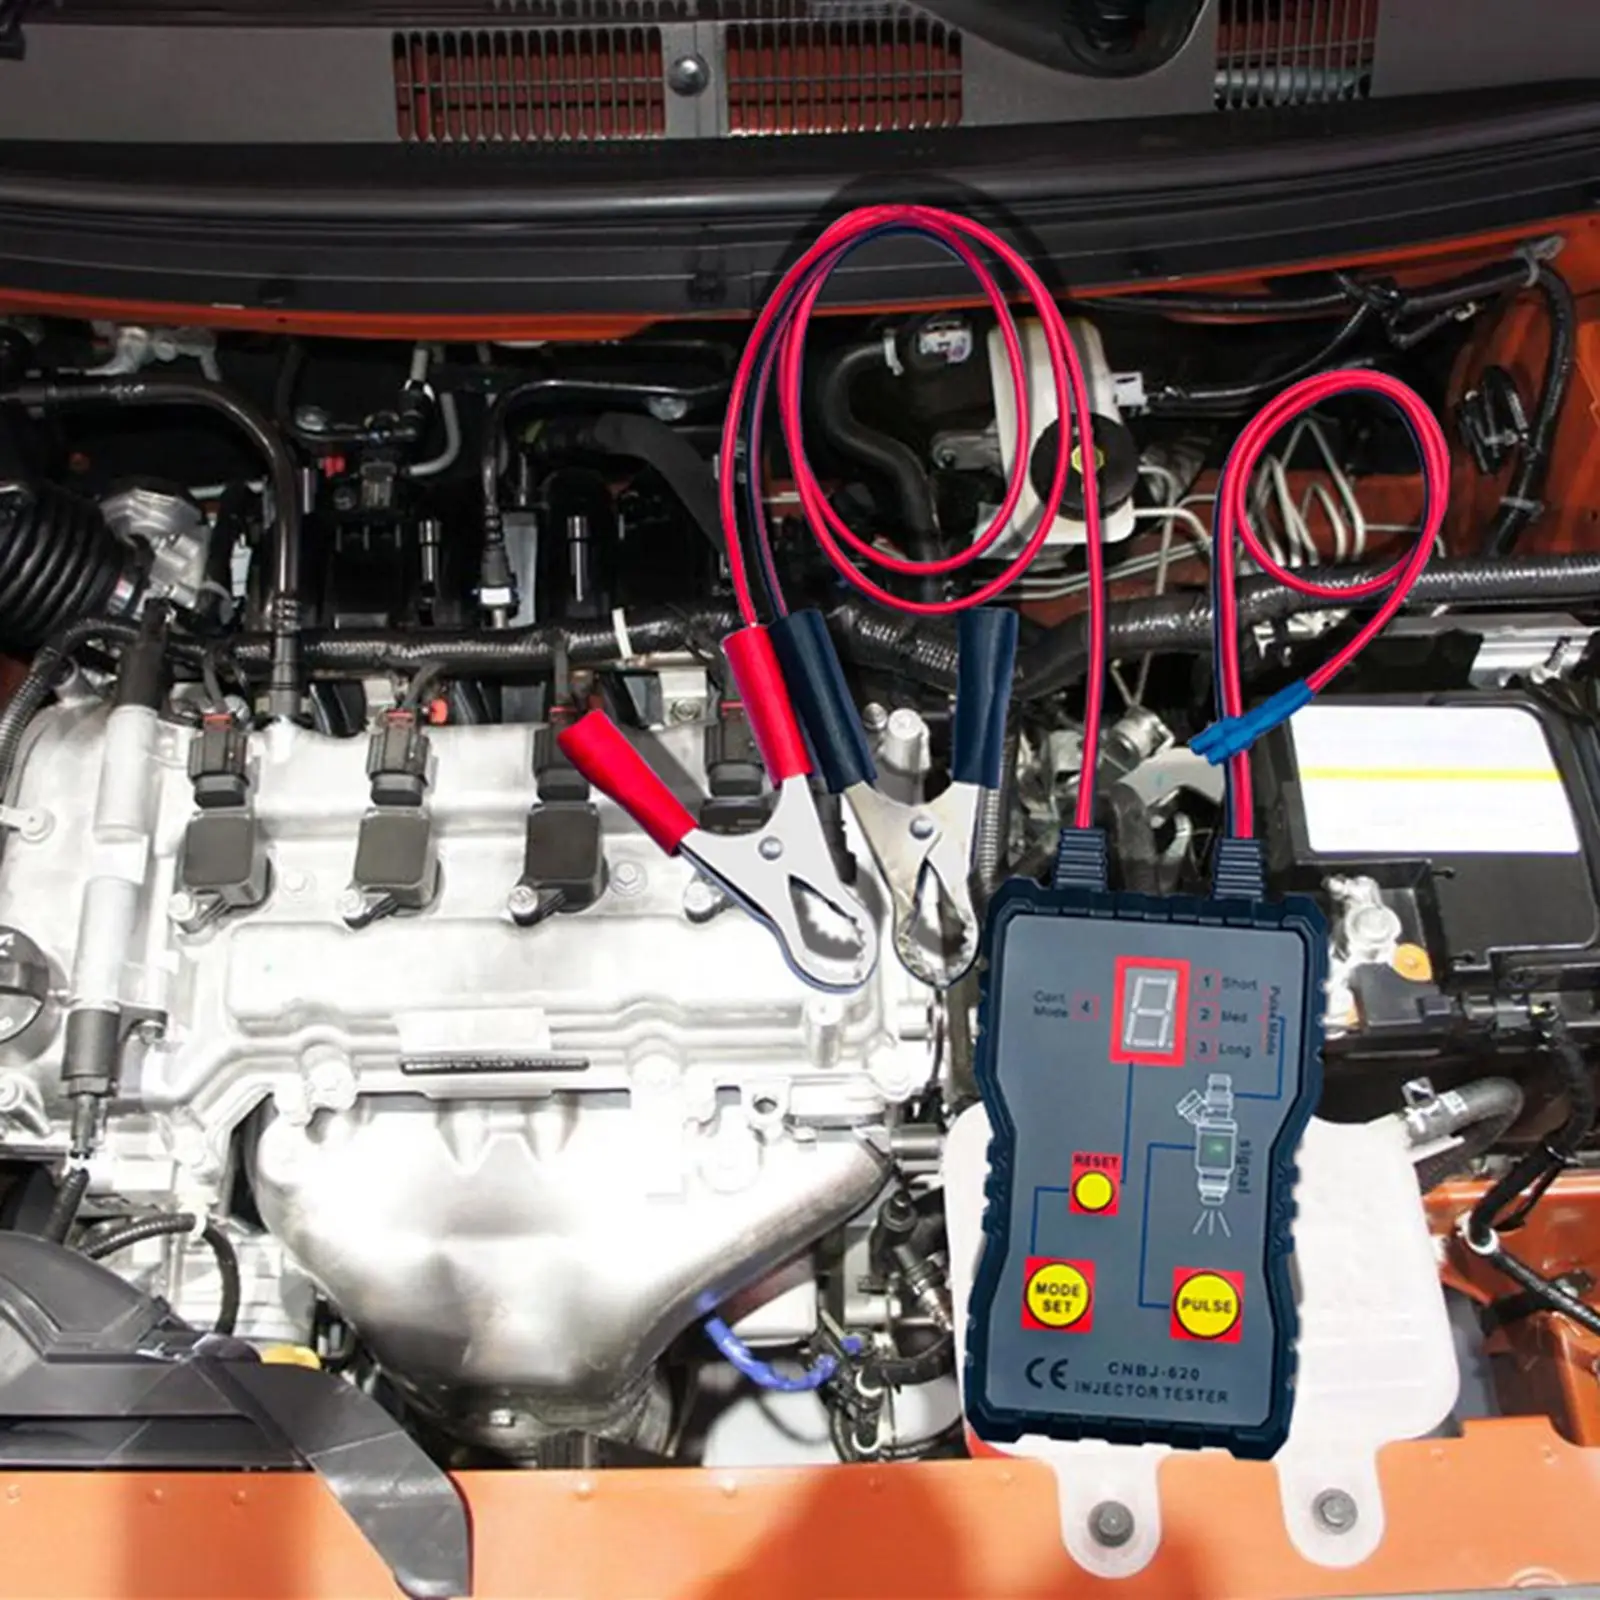 12V 4 Pulse Modes, Handheld Car Vehicle Fuel Pressure System Diagnostic Scan